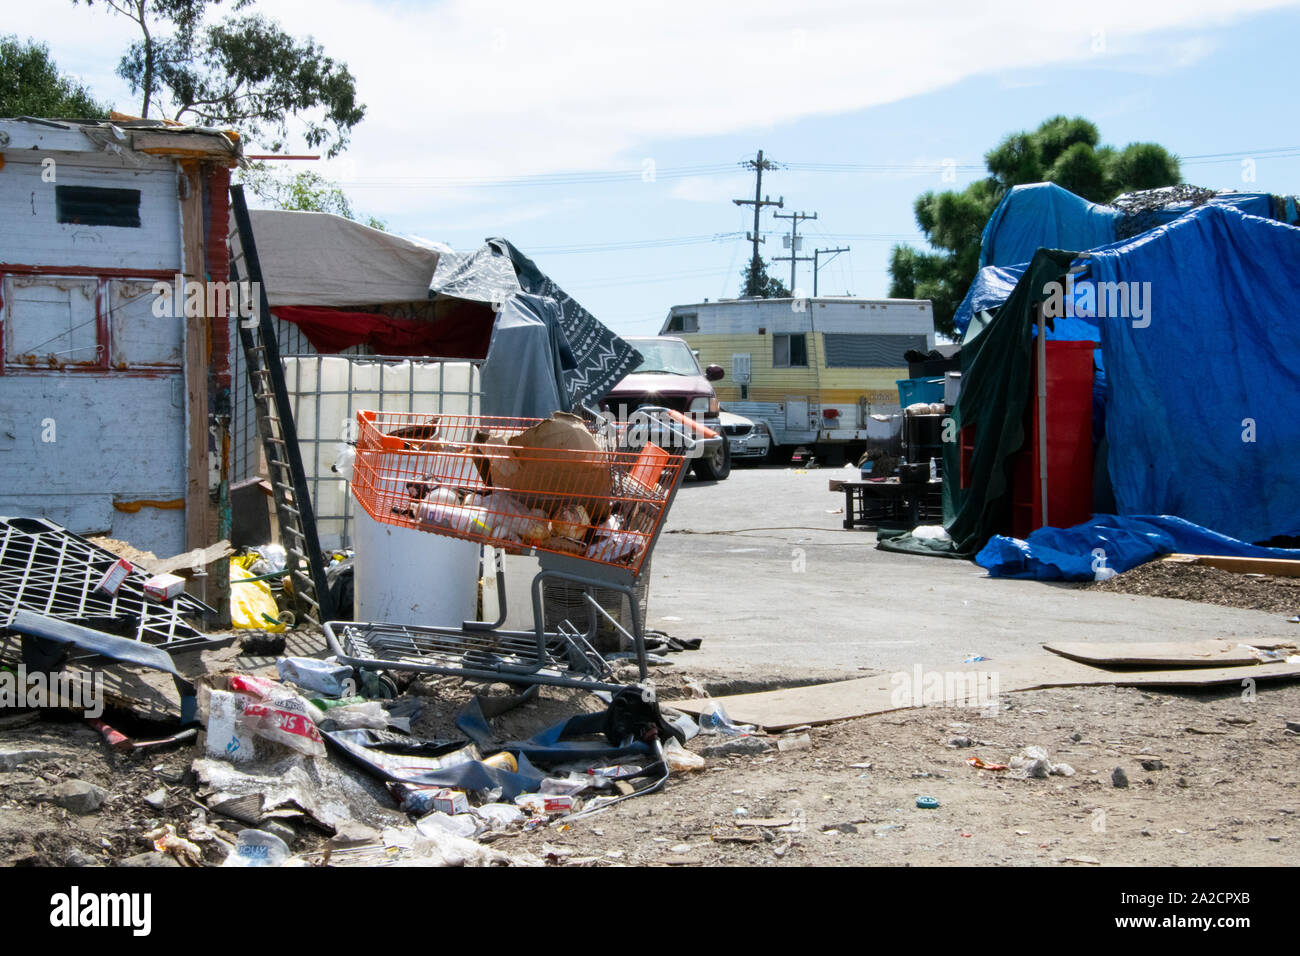 Un campamento de desamparados afuera de un Home Depot en East Oakland fotografiada en sept. 25. Foto de stock